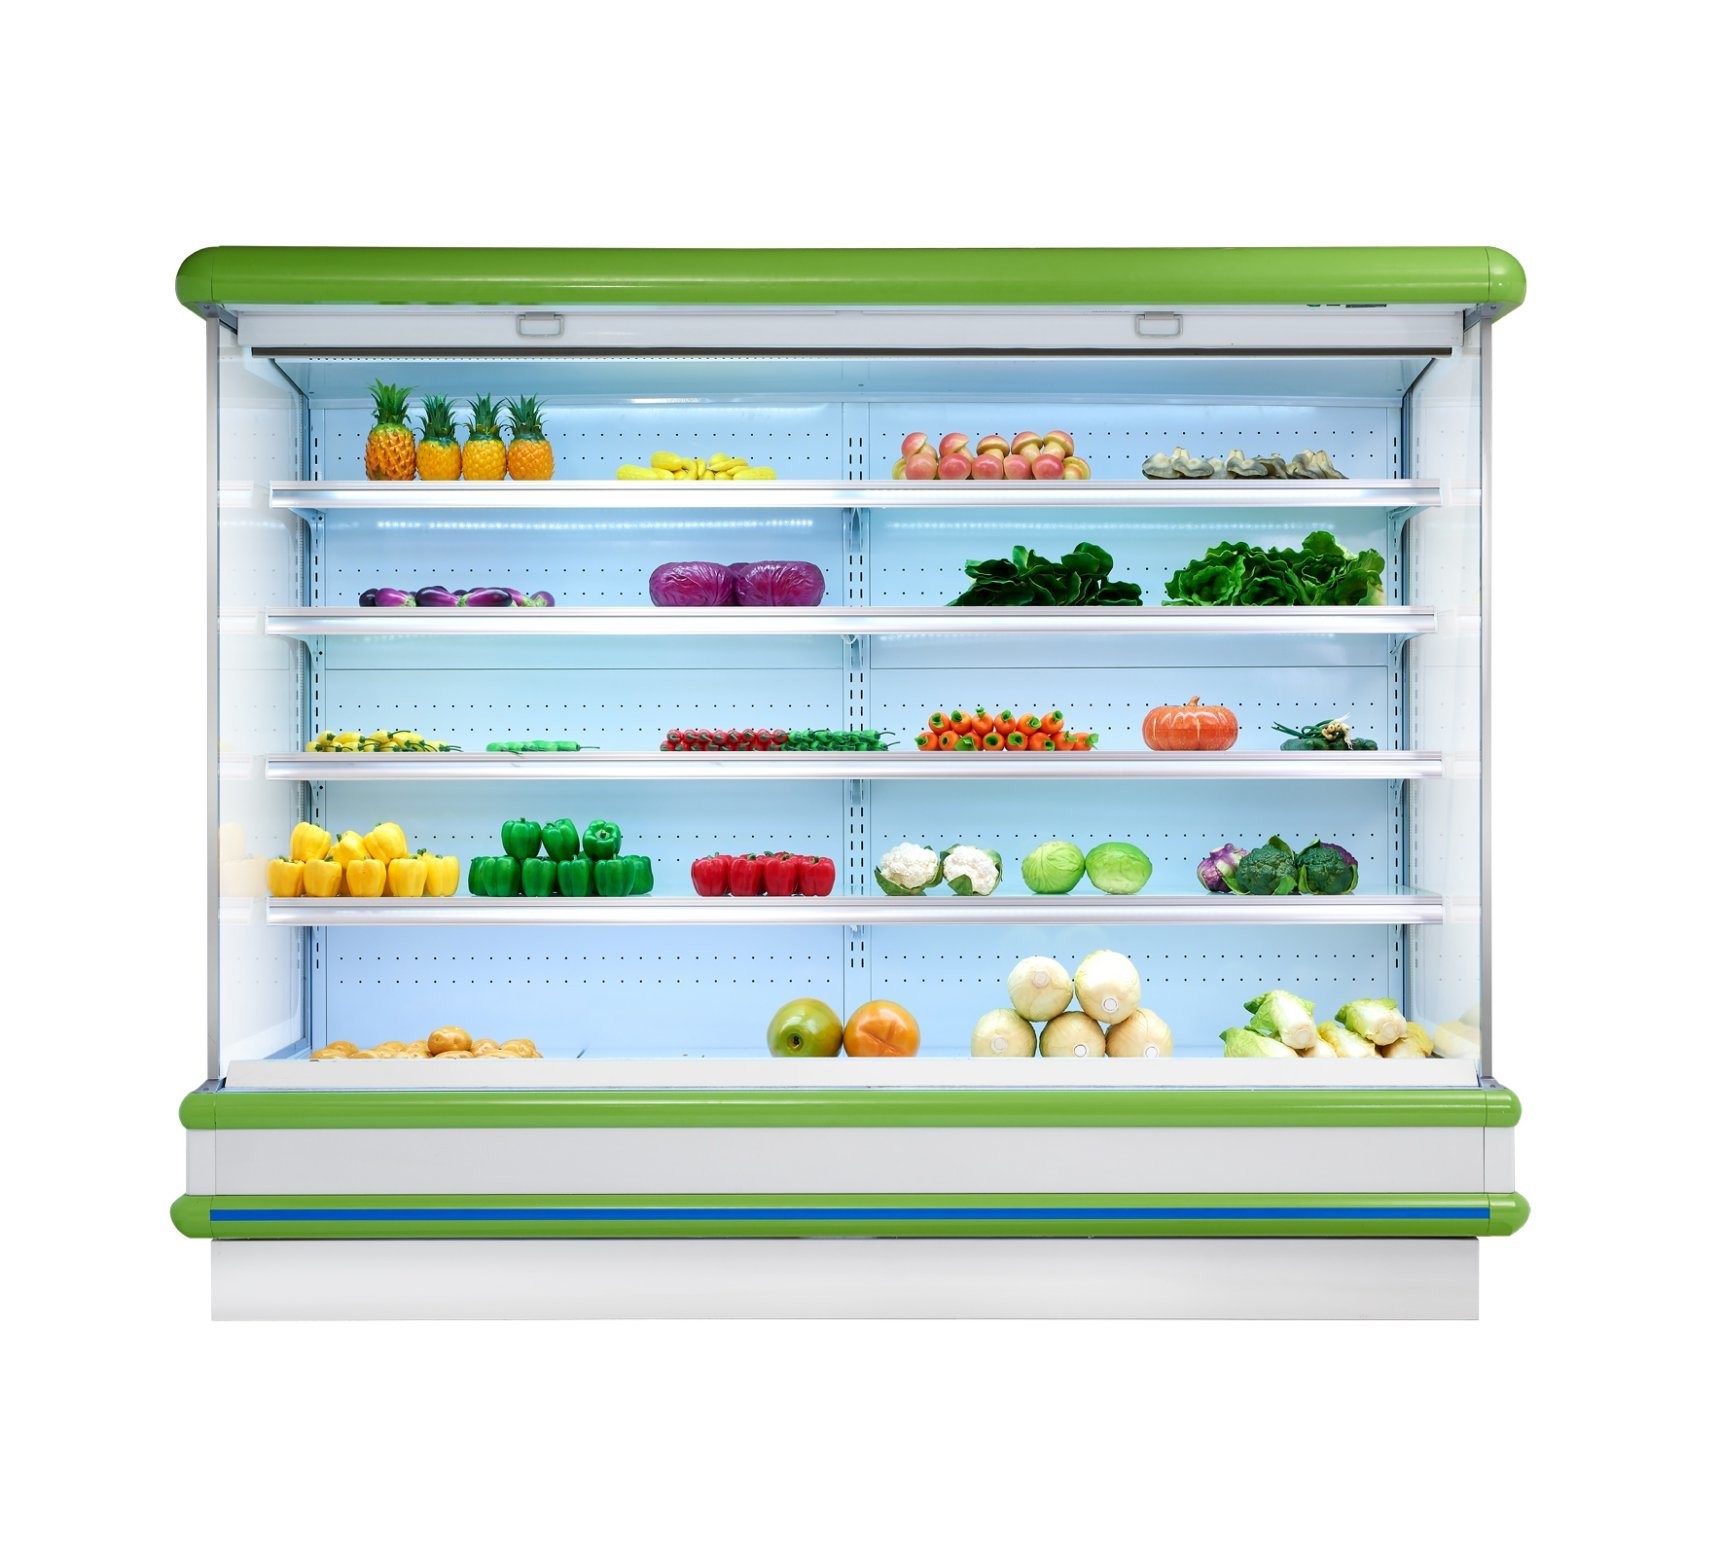 Tủ lạnh đa năng tiết kiệm năng lượng, mỗi kệ có đèn LED